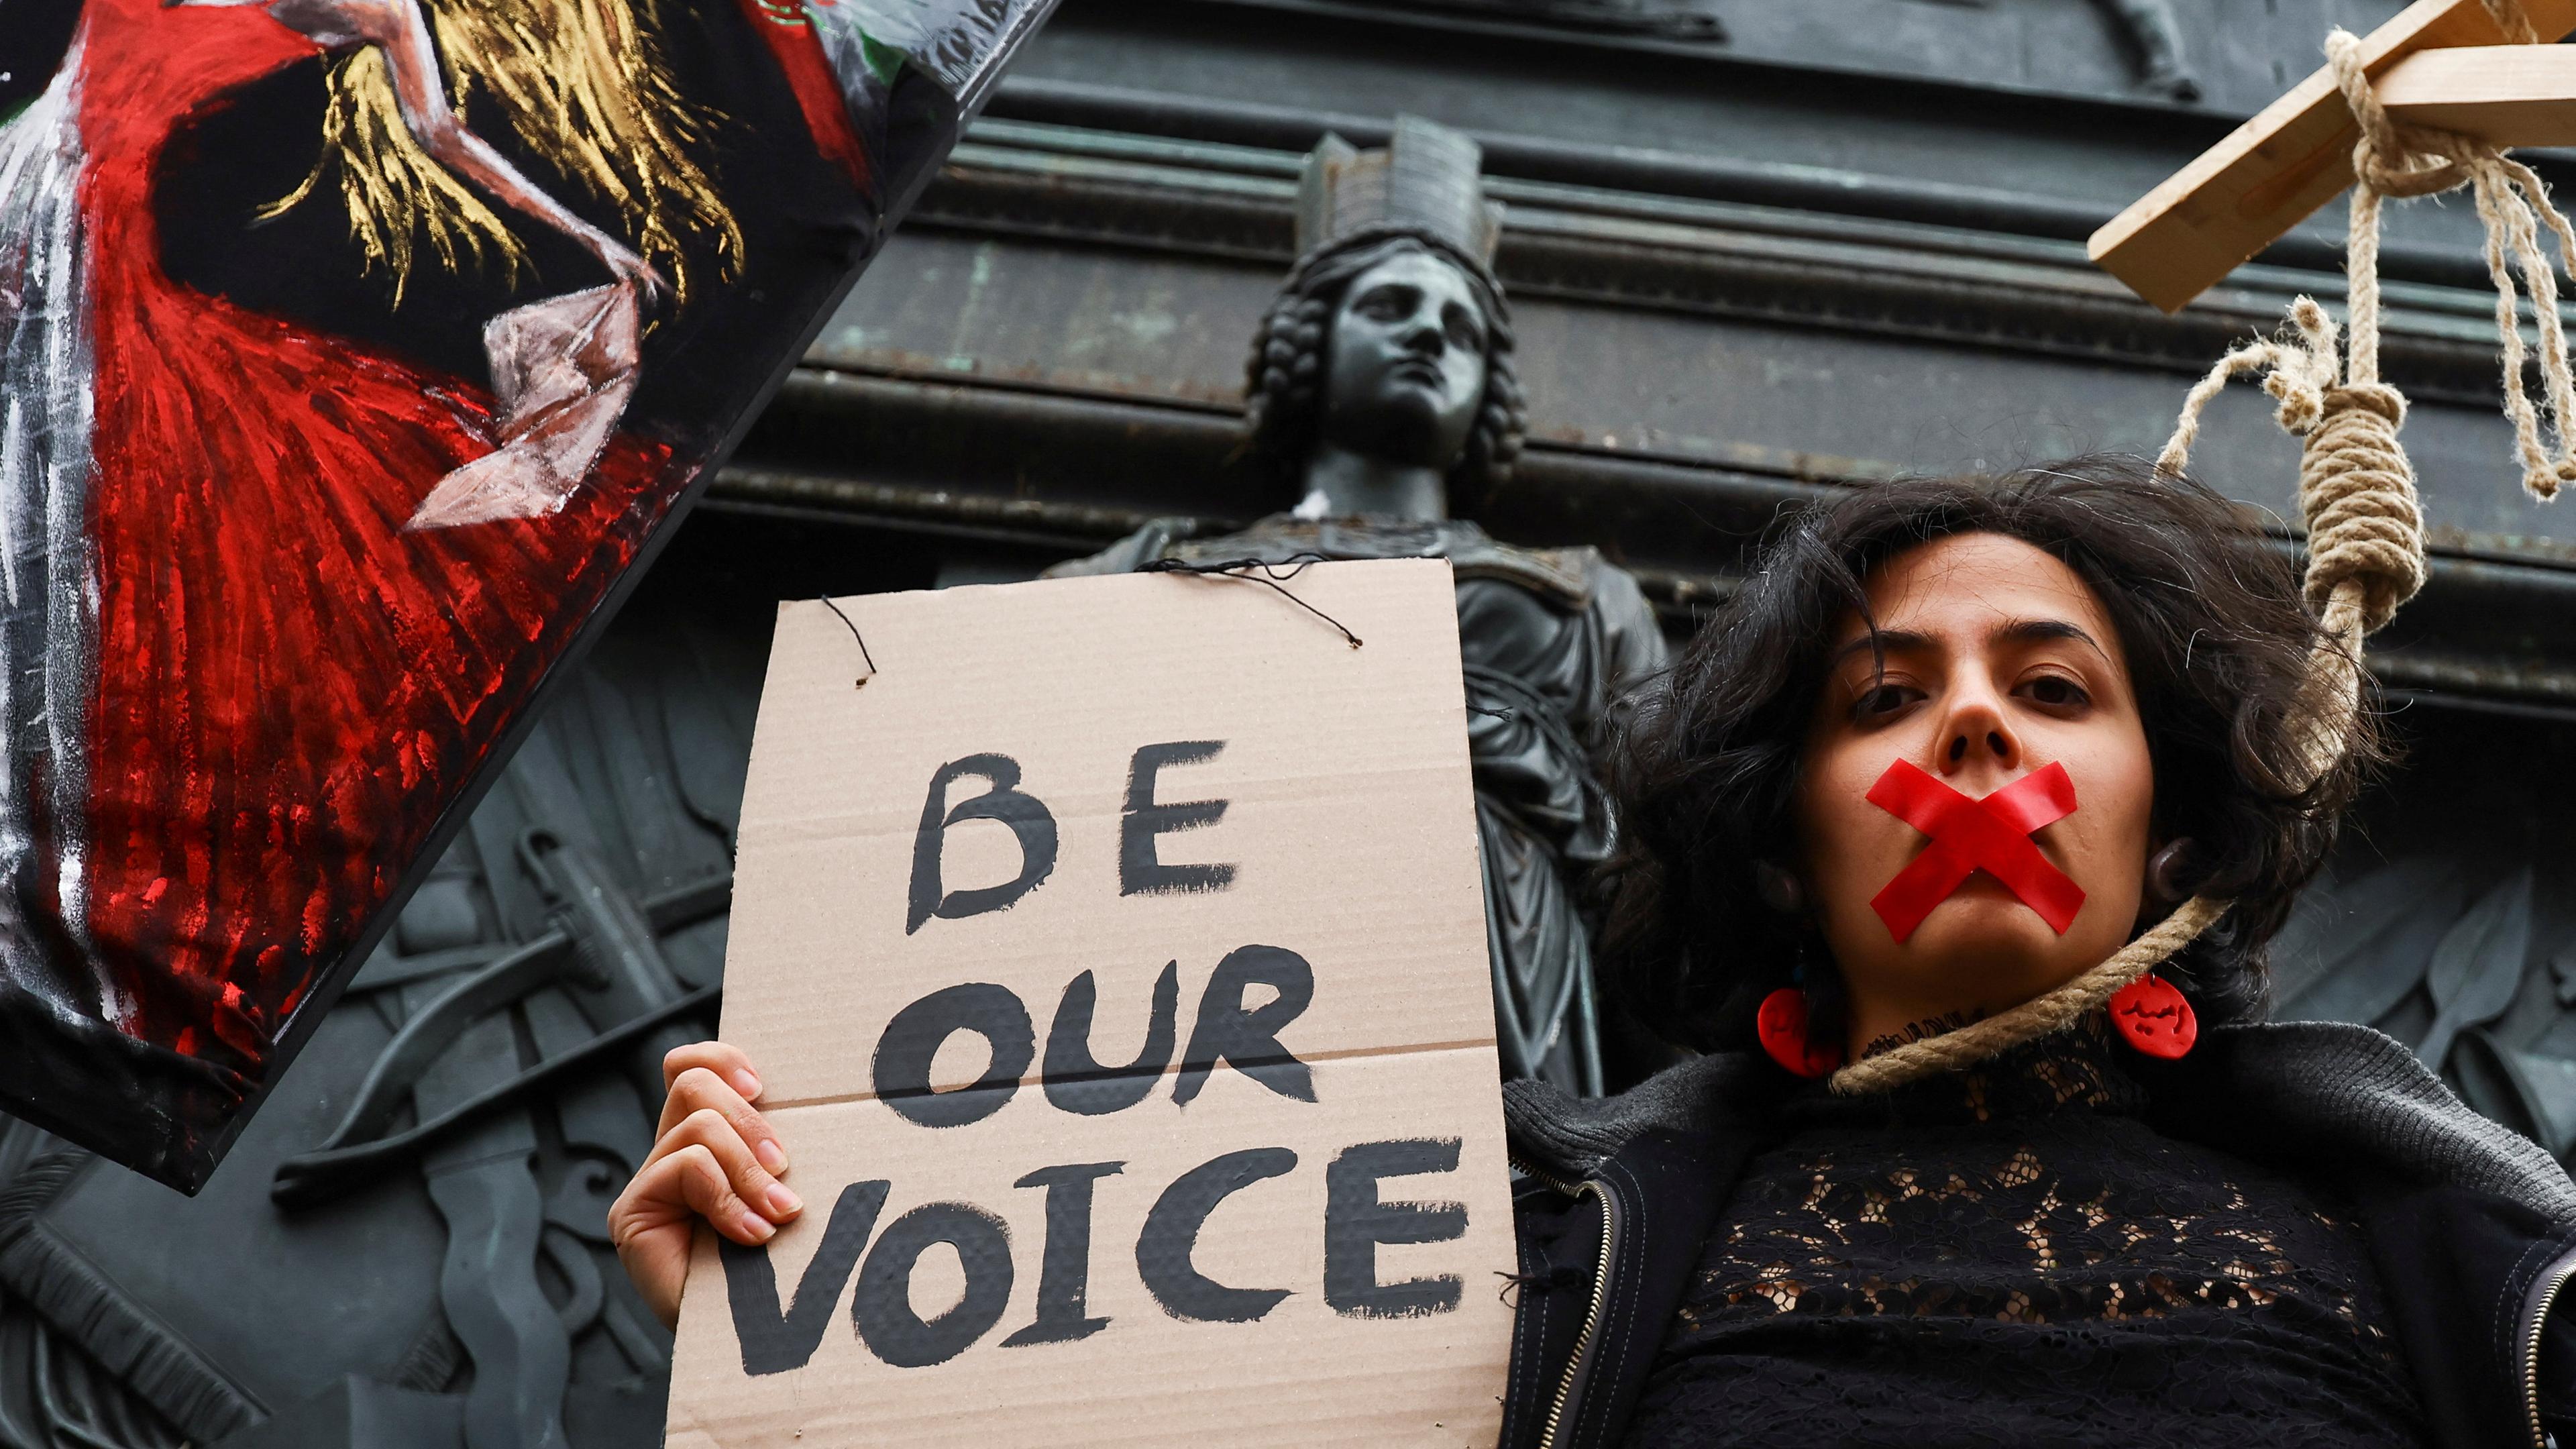 Eine Unterstützerin des iranischen Protests trägt einen Galgenstrick um den Hals und hat den Mund mit rotem Band verklebt. Sie hält ein Schild mit der Aufschrift "Be our voice" - zu Deutsch "Seid unsere Stimme".